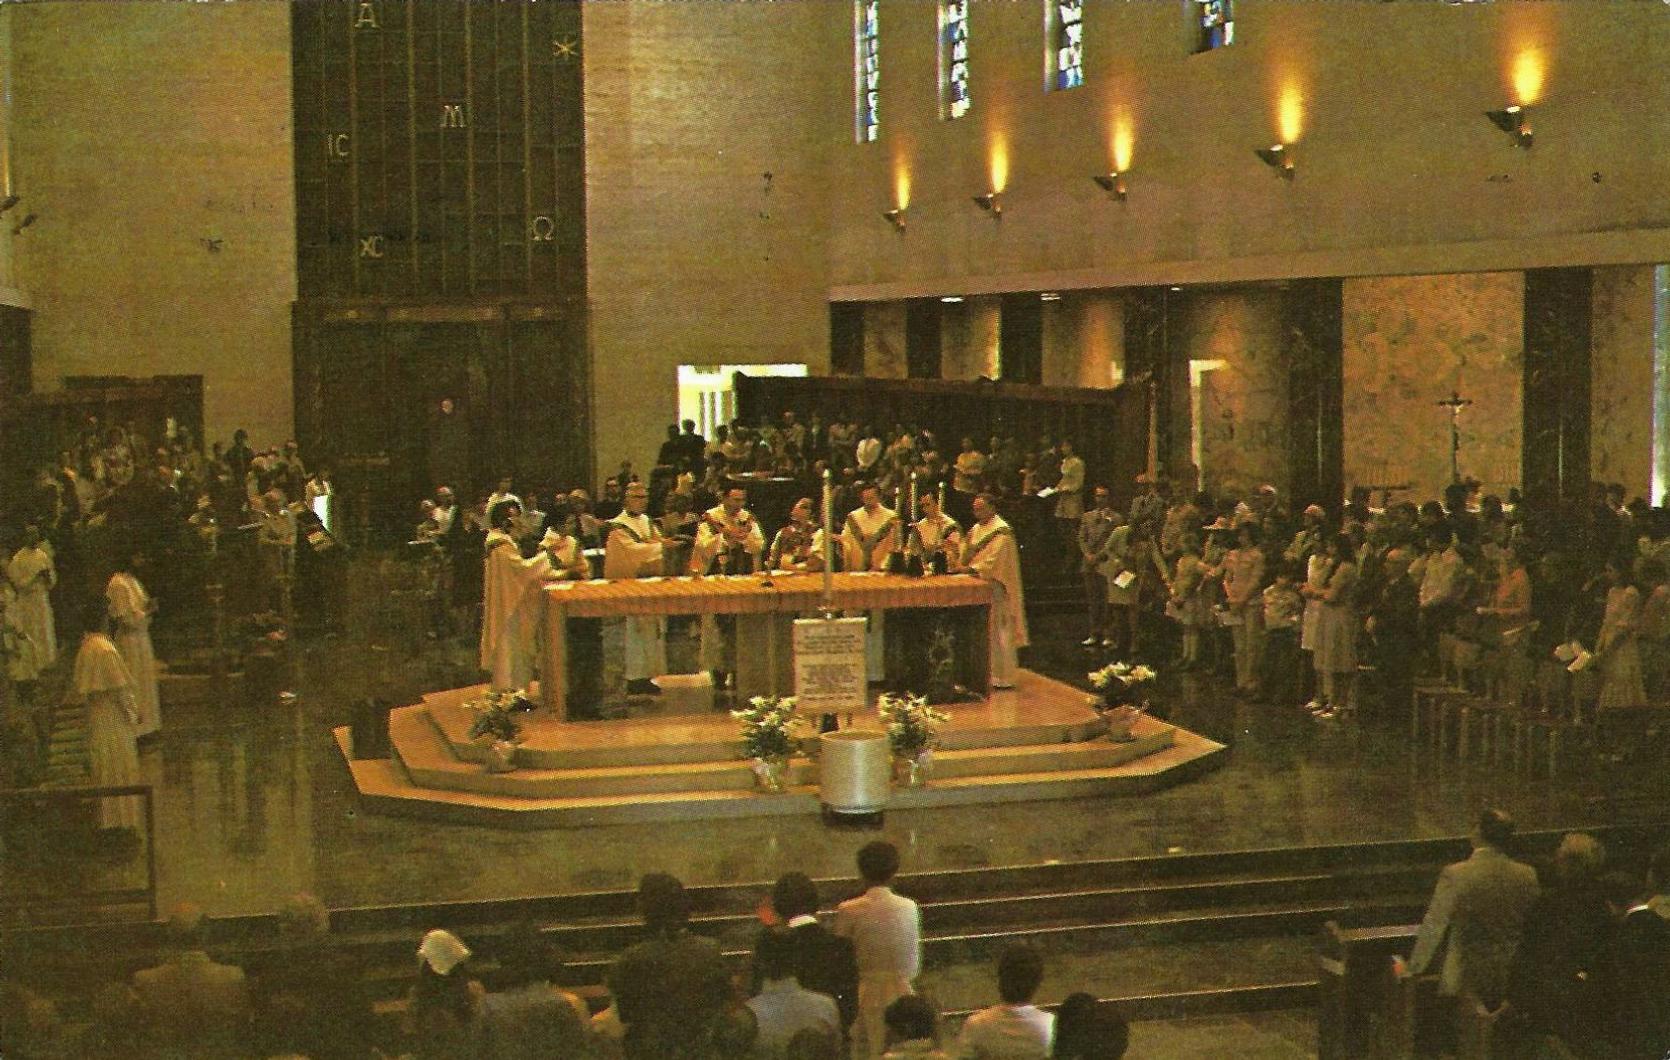 1976 - St. Norbert Abbey, Mass